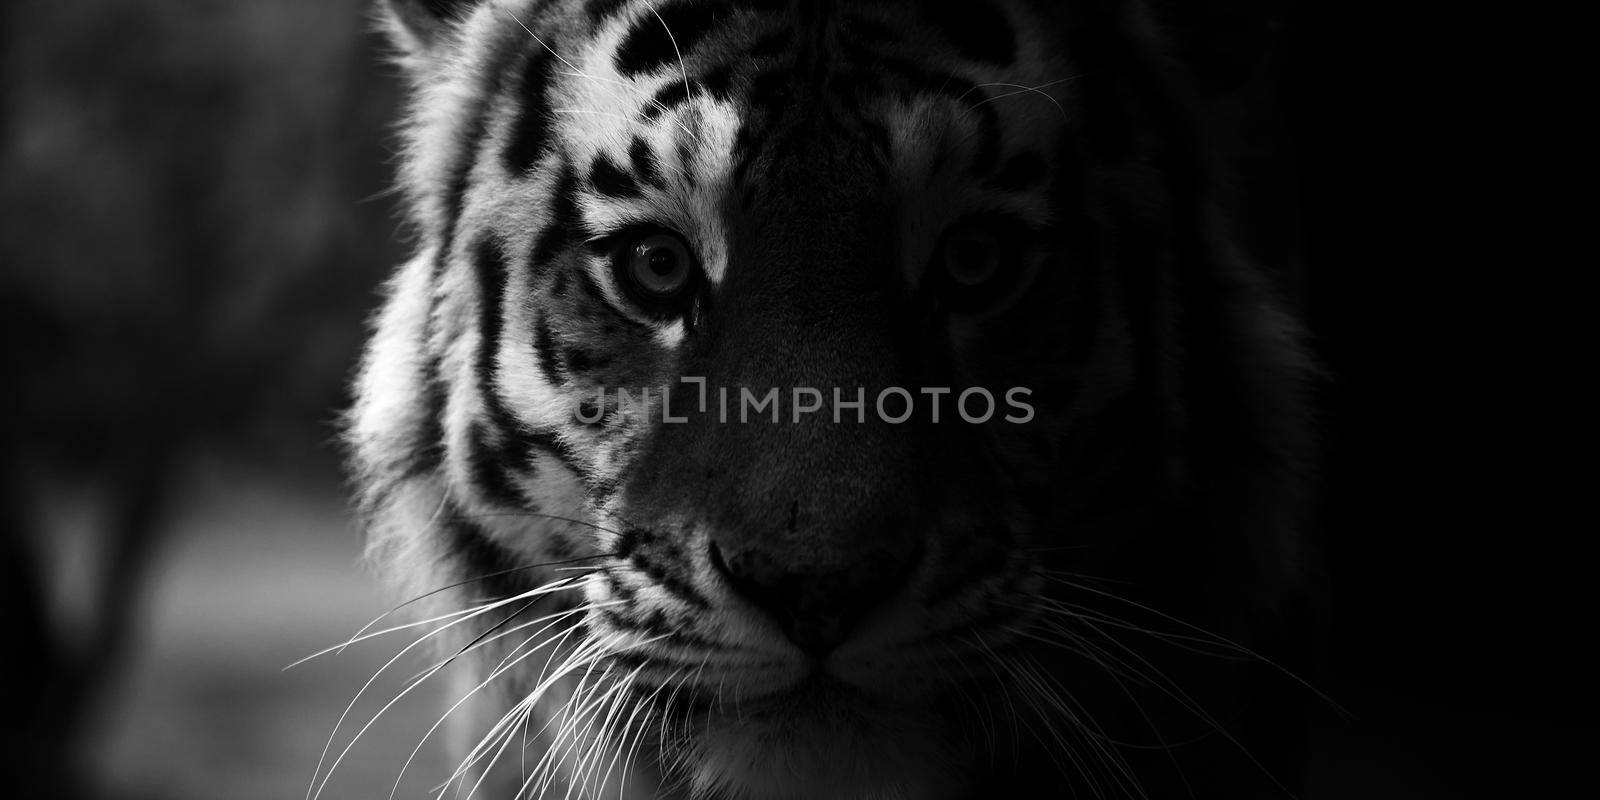 Portrait of a beautiful tiger. Big cat close-up. Tiger looks at you, portrait of a tiger. Portrait of a big cat.